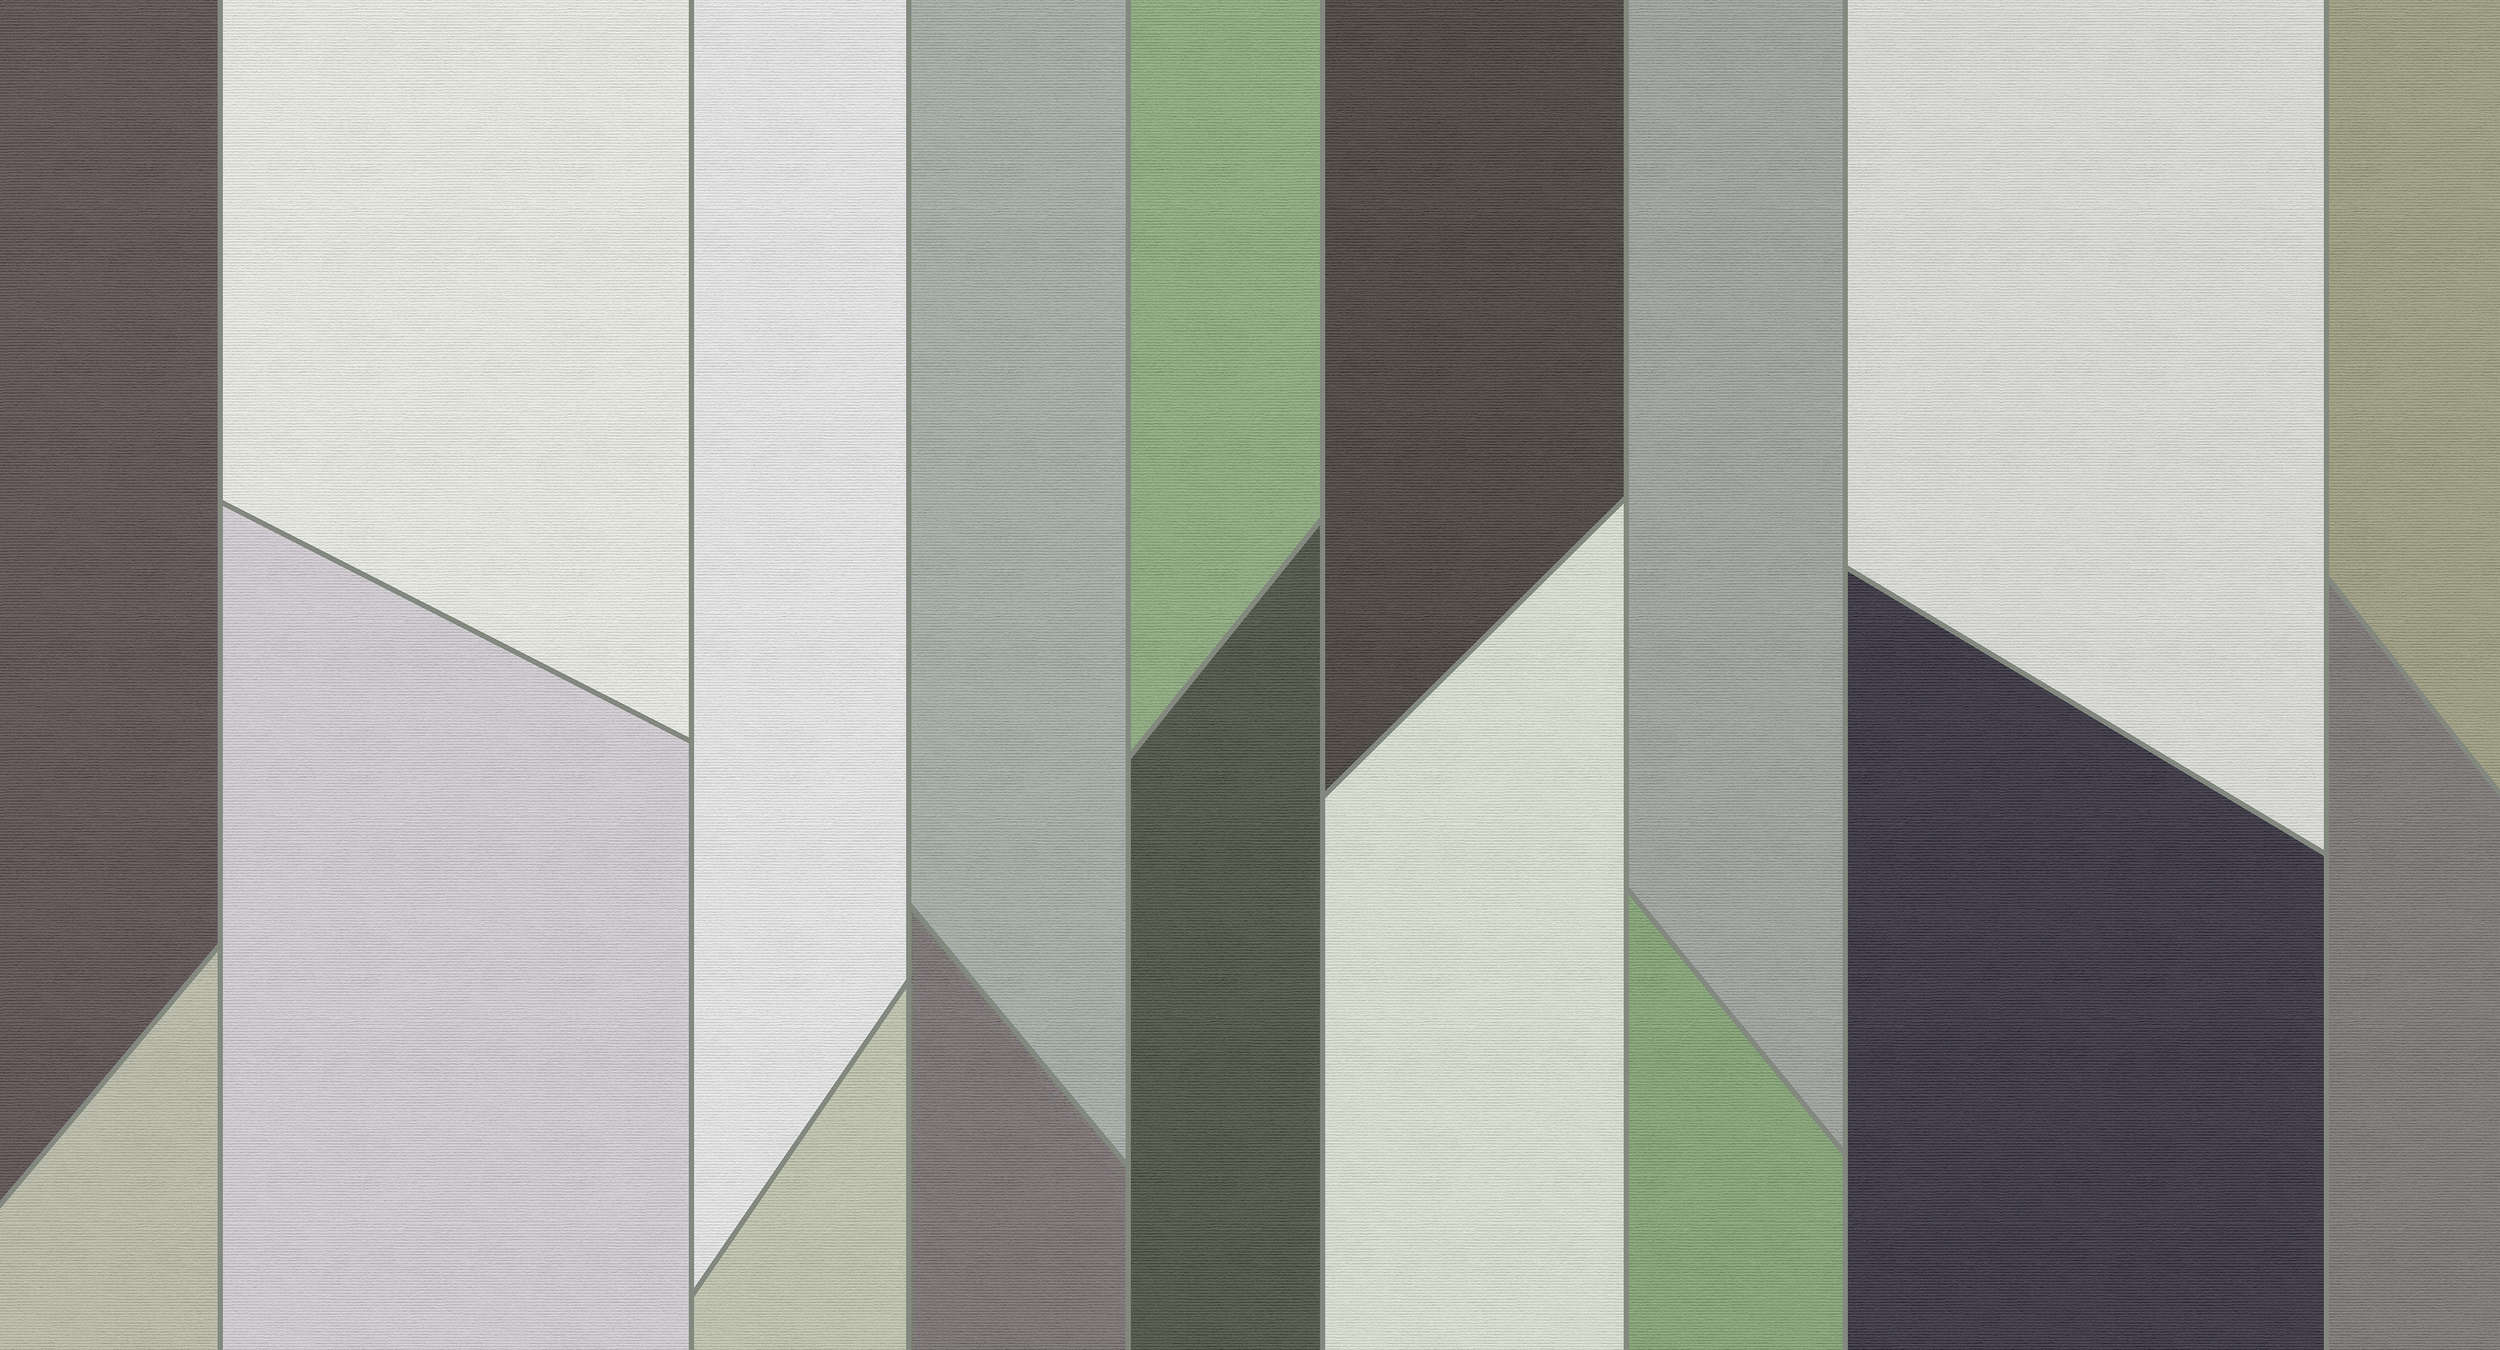             Geometry 3 - Streifen Fototapete in gerippter Struktur mit buntem Retro Design – Grün, Violett | Premium Glattvlies
        